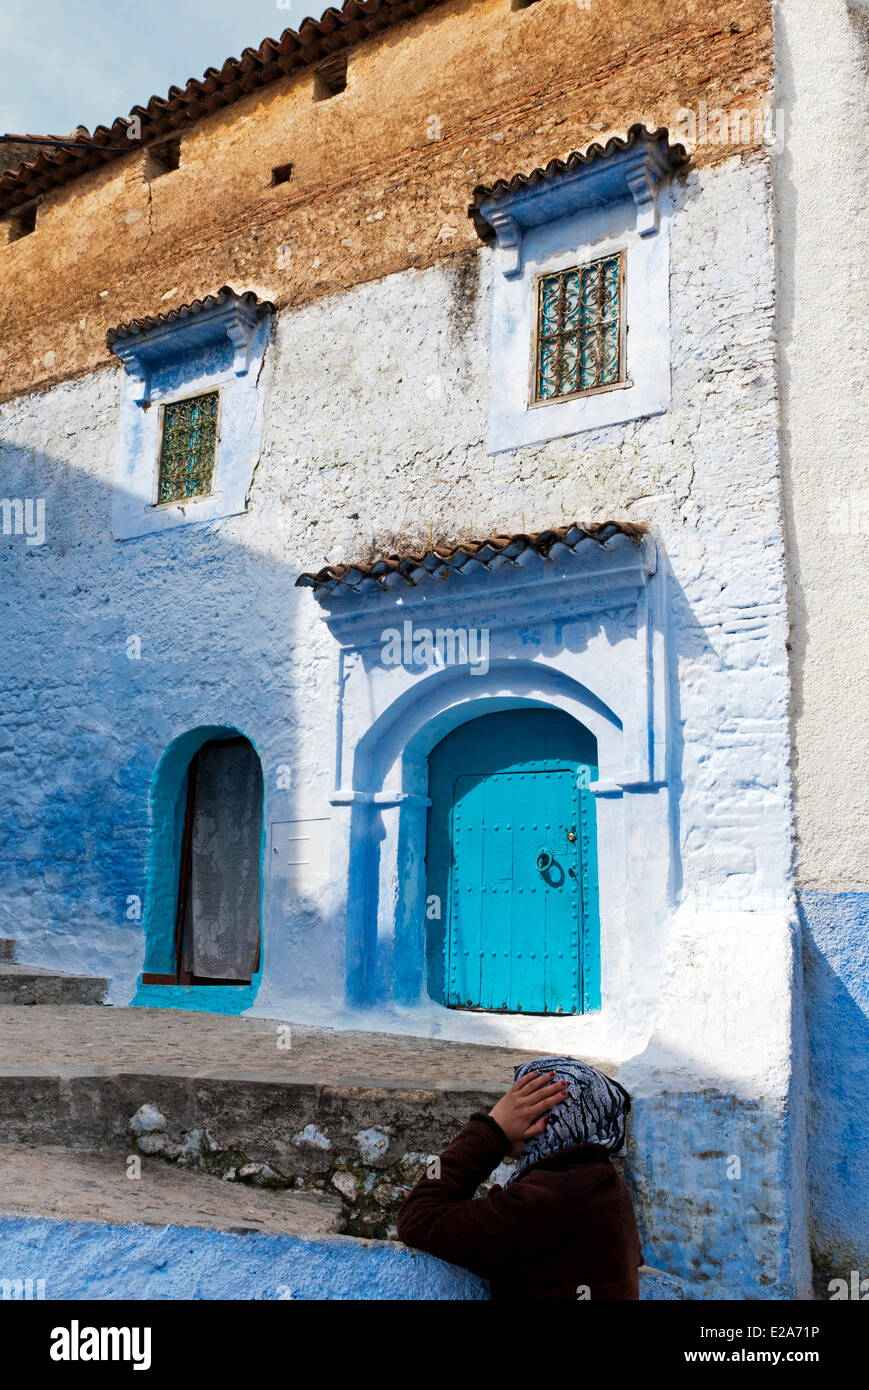 Morocco, Rif region, Chefchaouen (Chaouen), kasbah Stock Photo